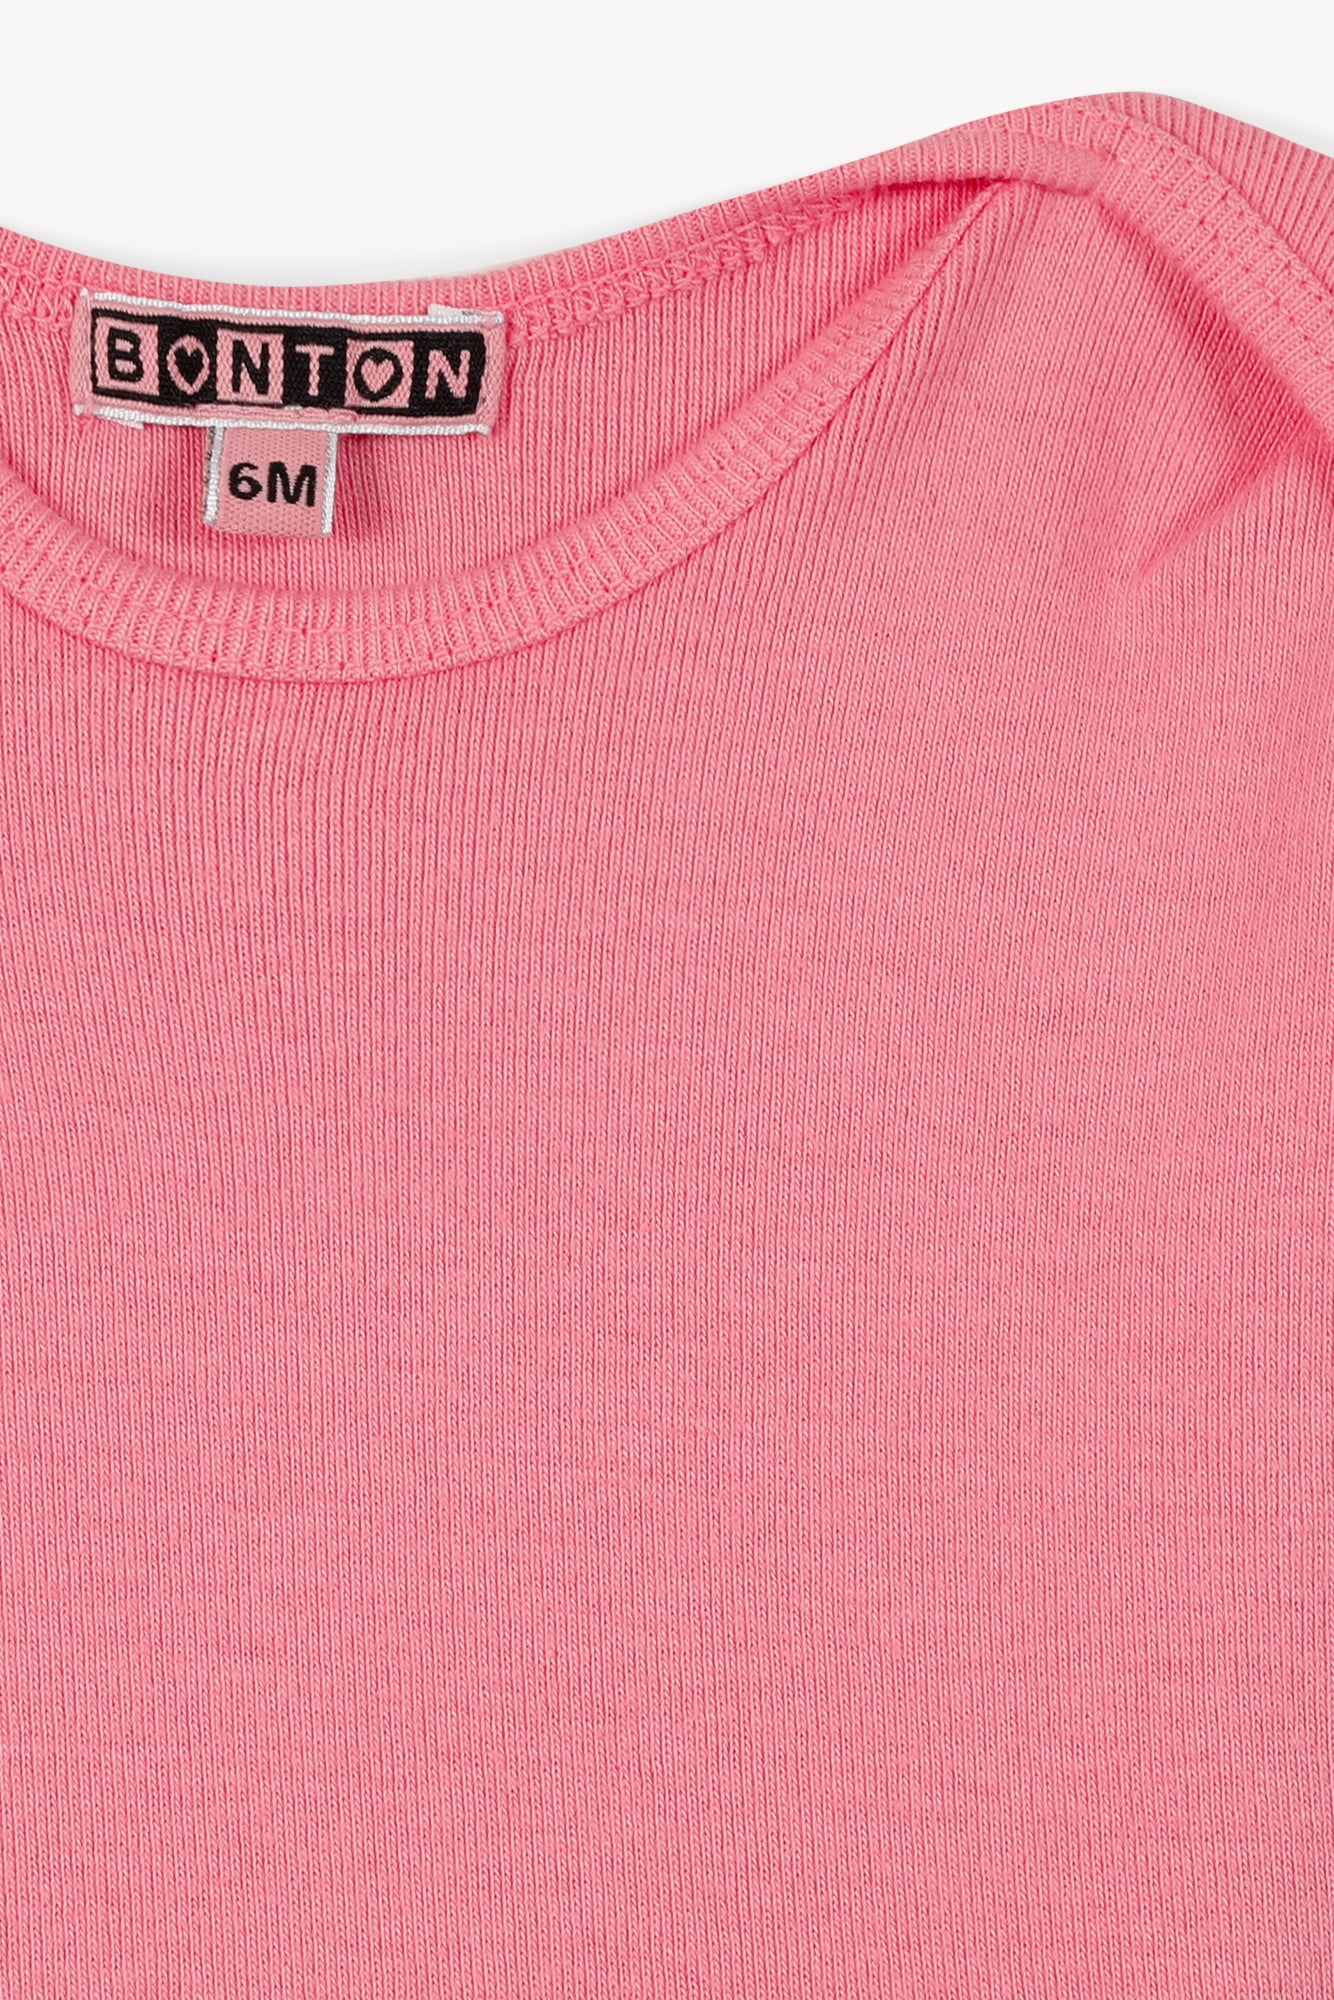 Tee-shirt - Tina rose Bébé coton organique